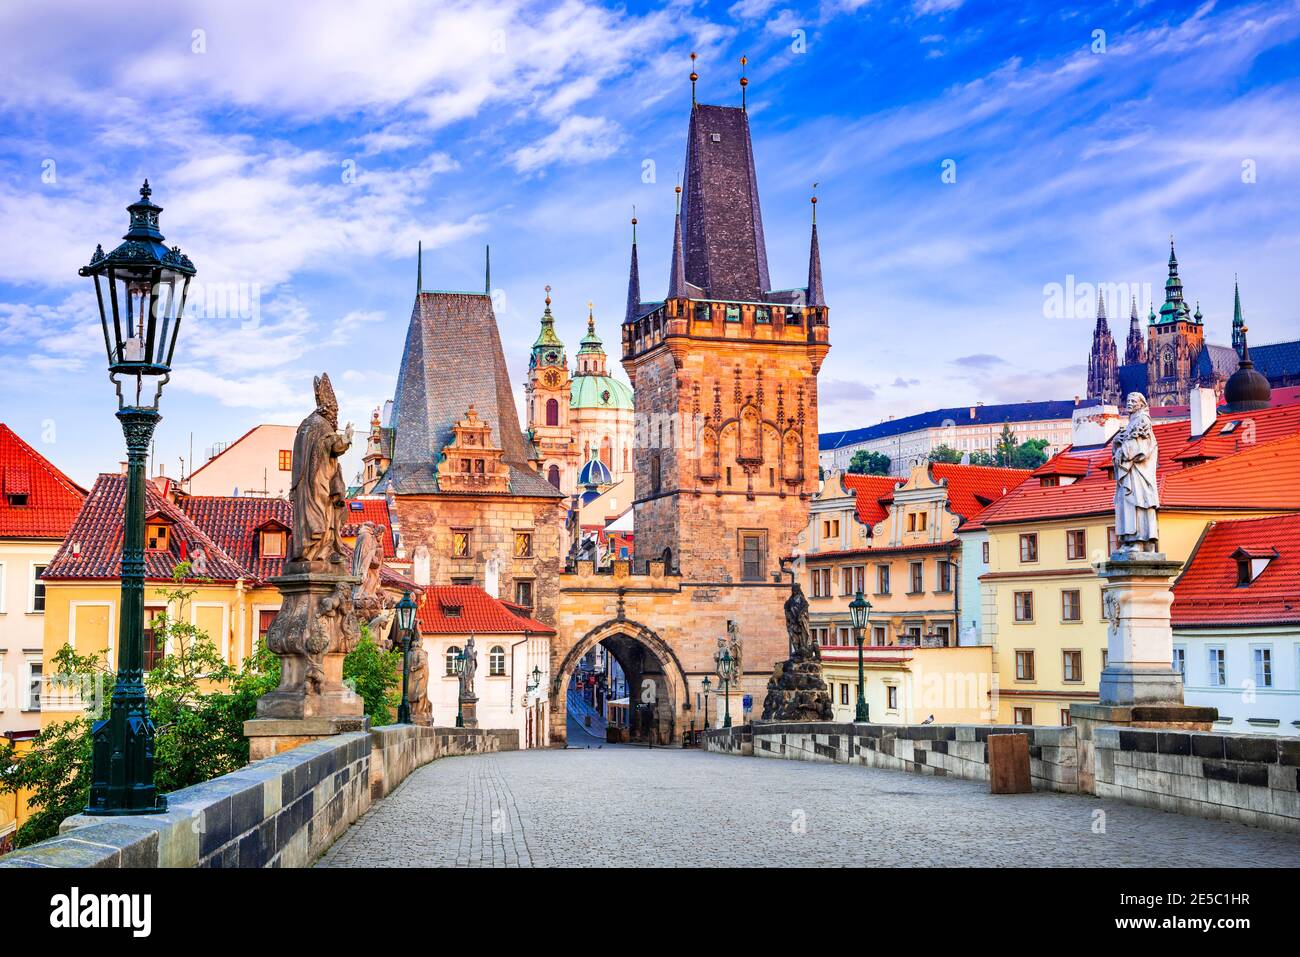 Praga, República Checa. Mala Strana centro medieval de Praha, reino medieval de Bohemia y ciudad imperial. Foto de stock